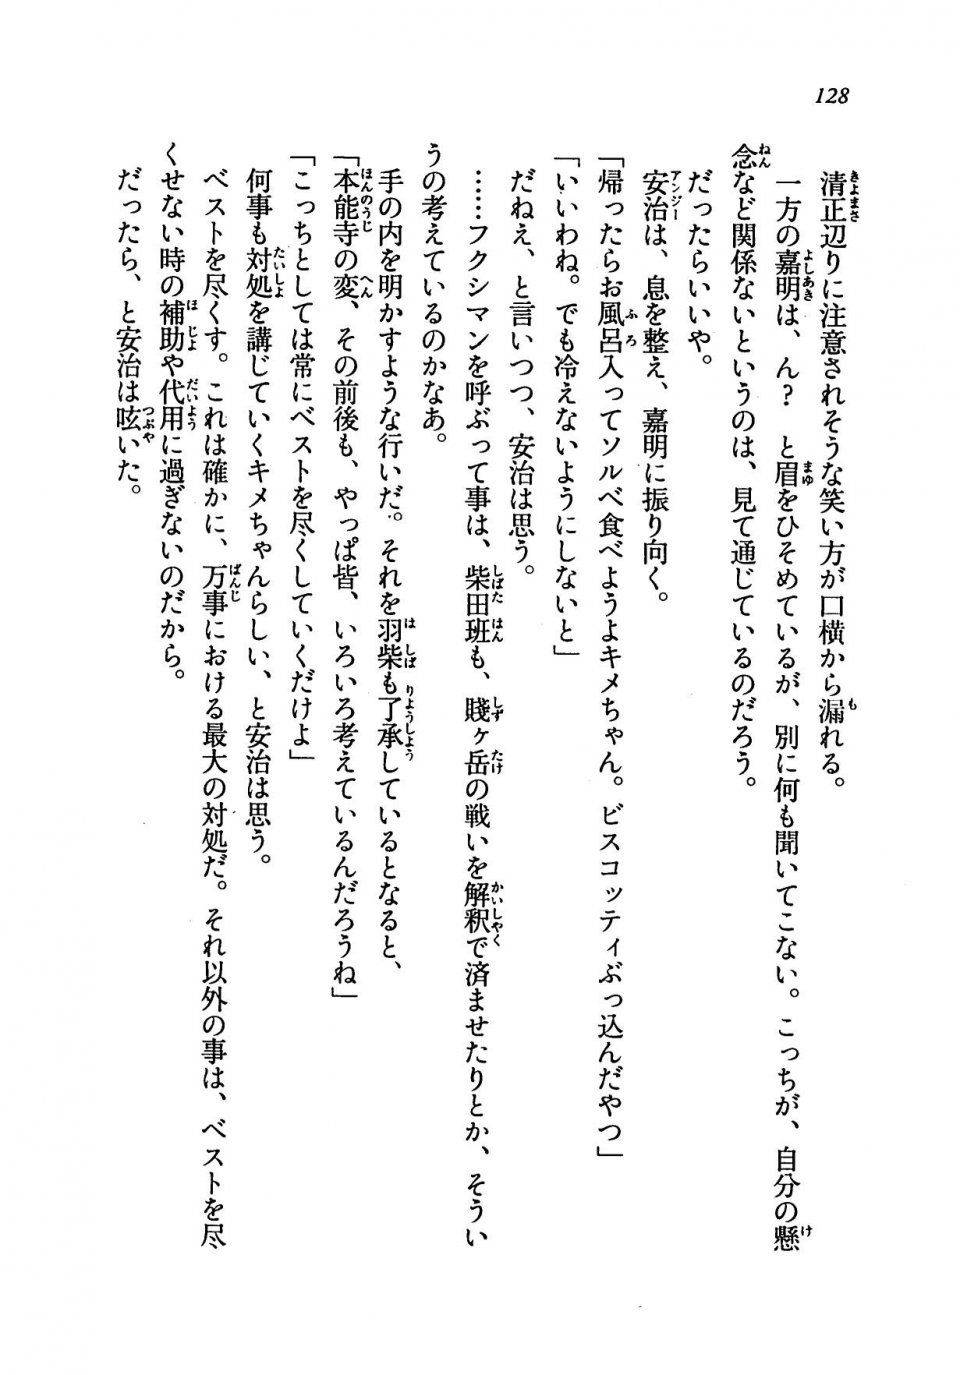 Kyoukai Senjou no Horizon LN Vol 19(8A) - Photo #128